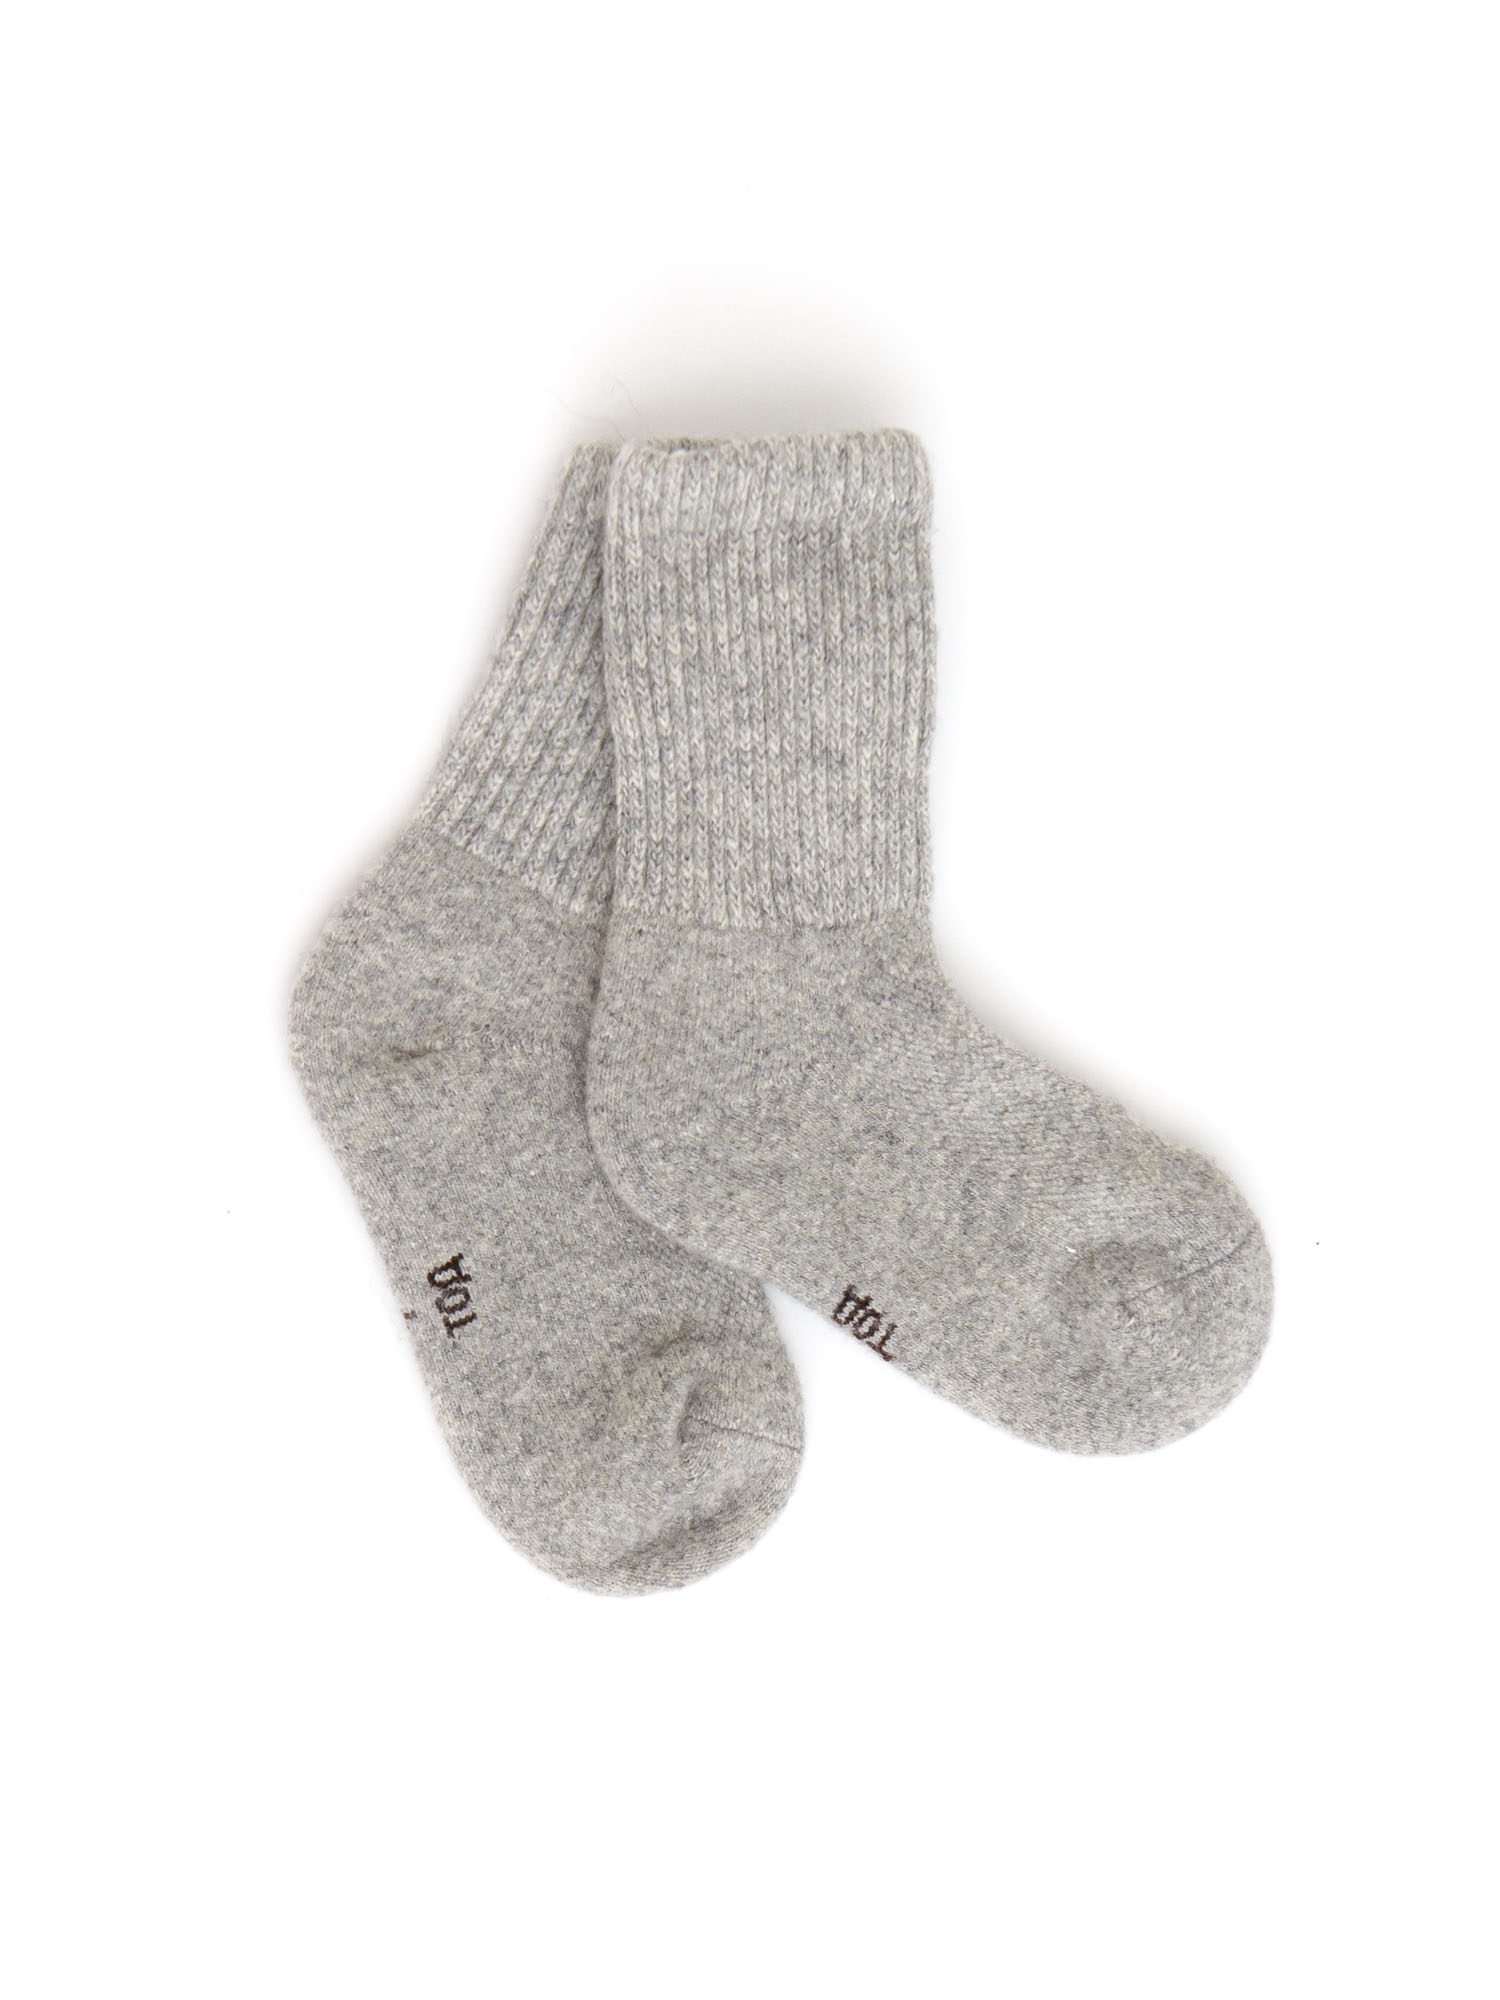 Детские носки из монгольской шерсти 2с ТОД ОЙМС ХХК, цвет серый, размер 2 (12-14 см) - фото 1